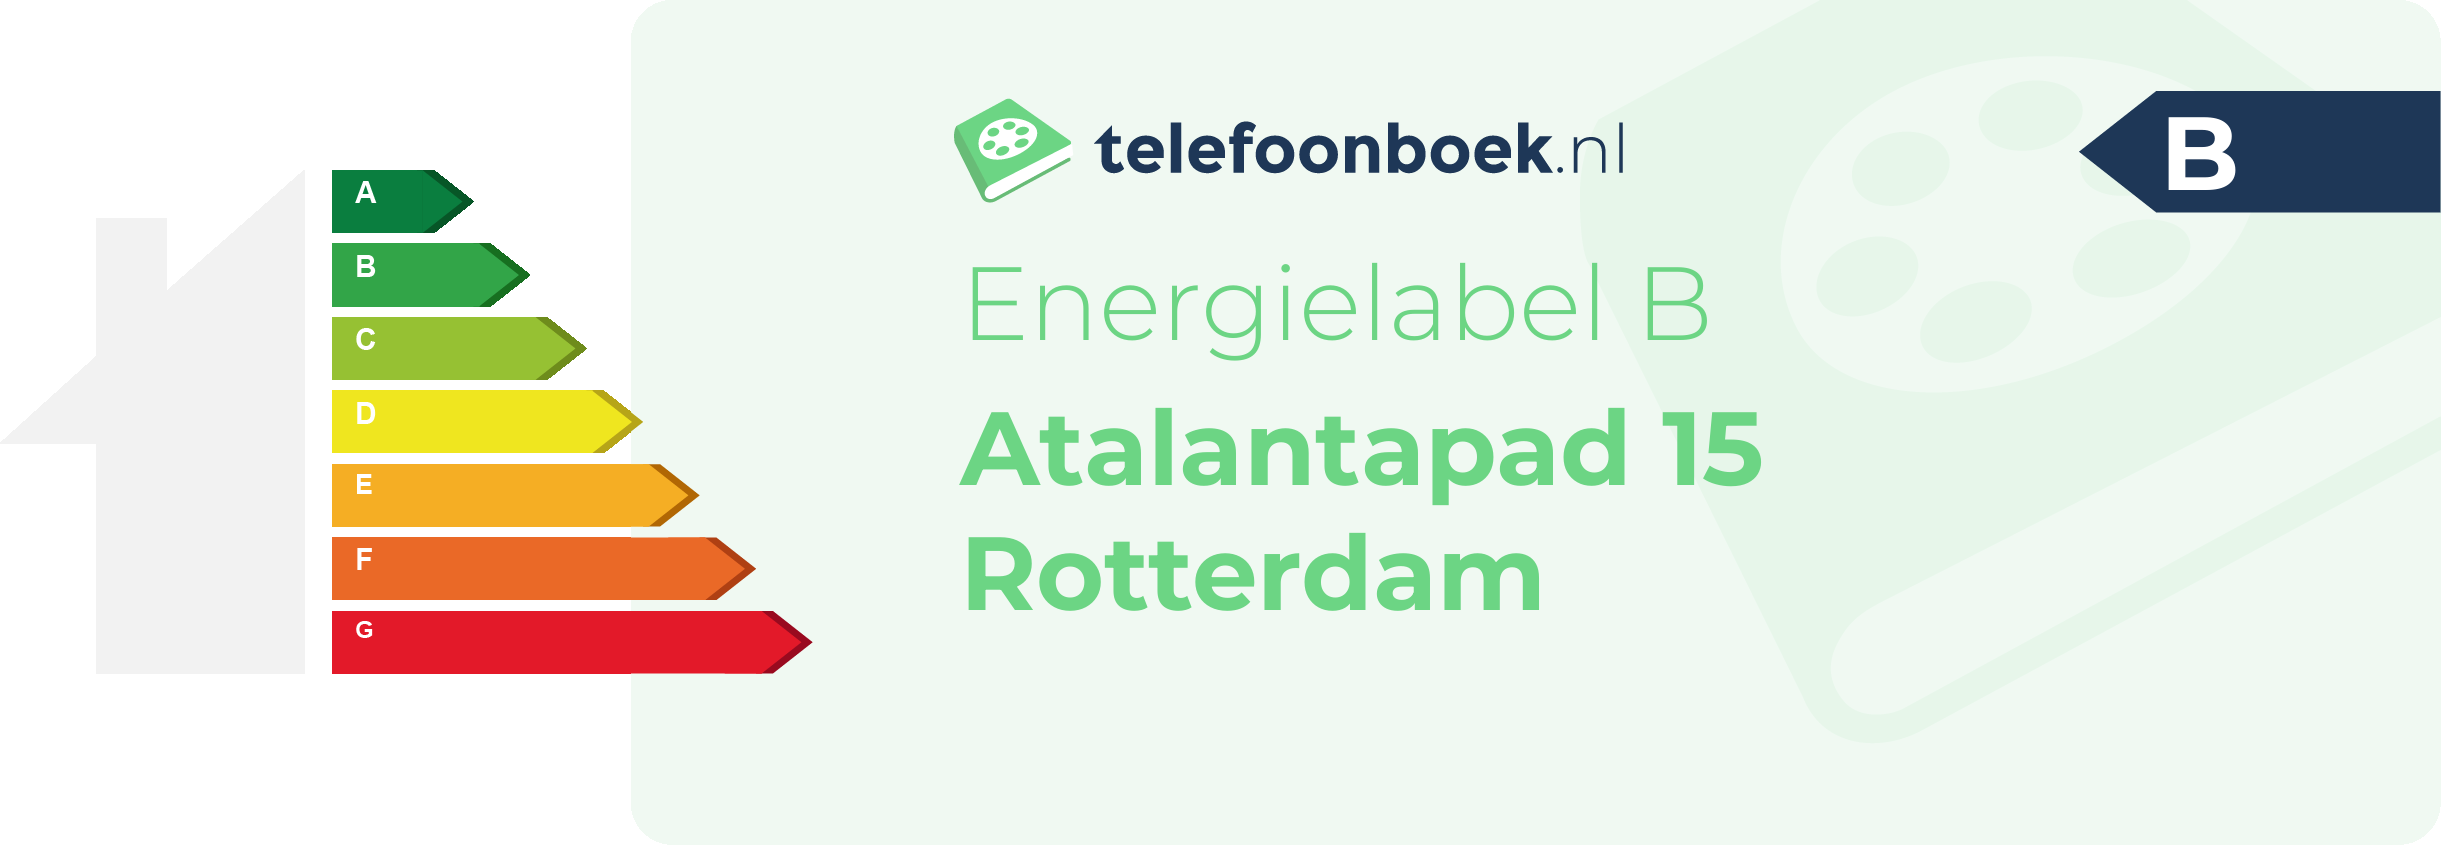 Energielabel Atalantapad 15 Rotterdam